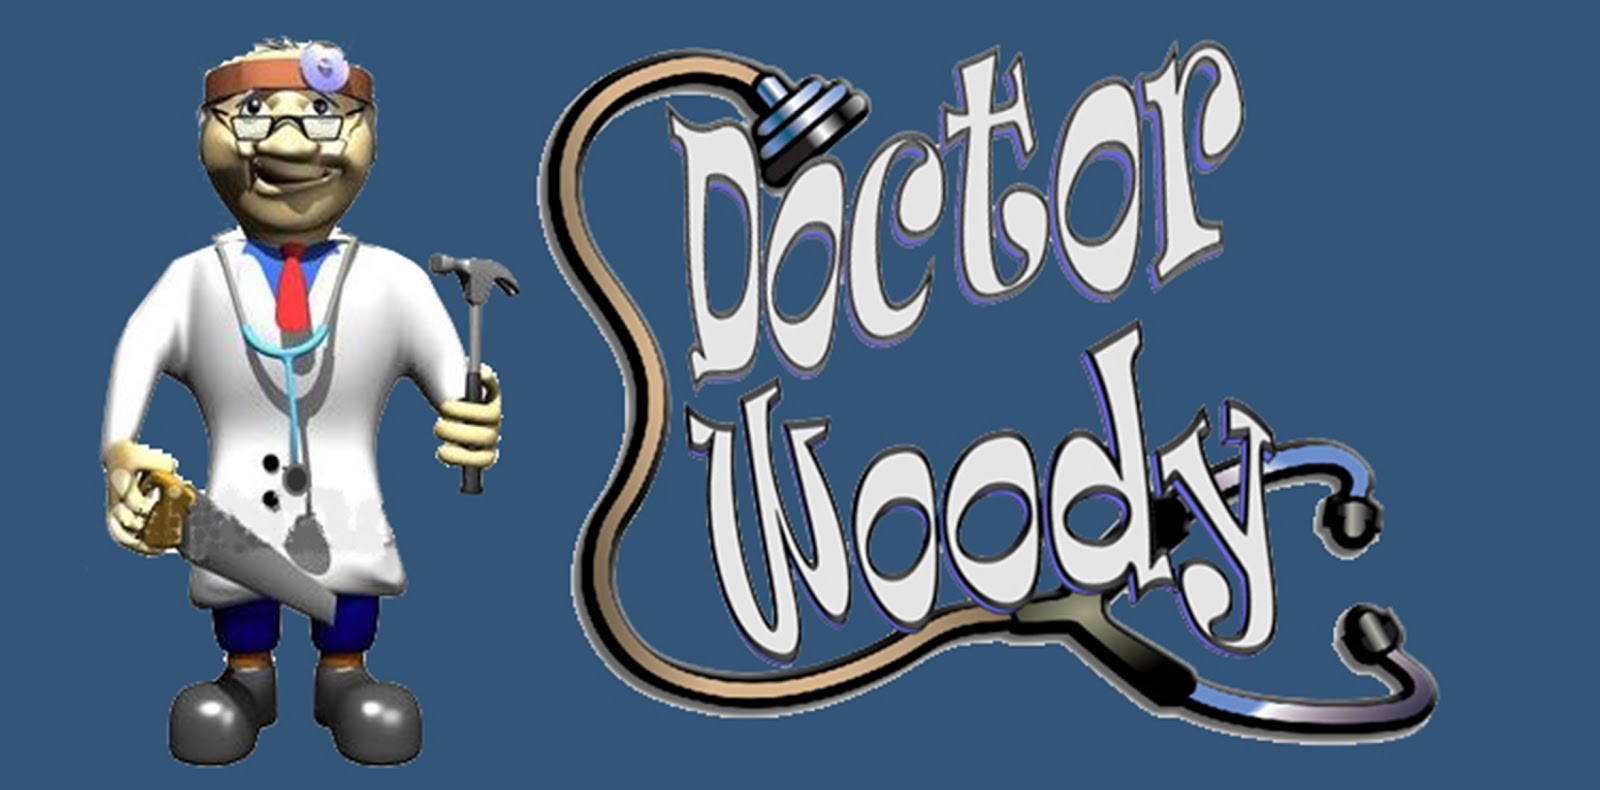 DOCTOR WOODY ' Especialista en madera